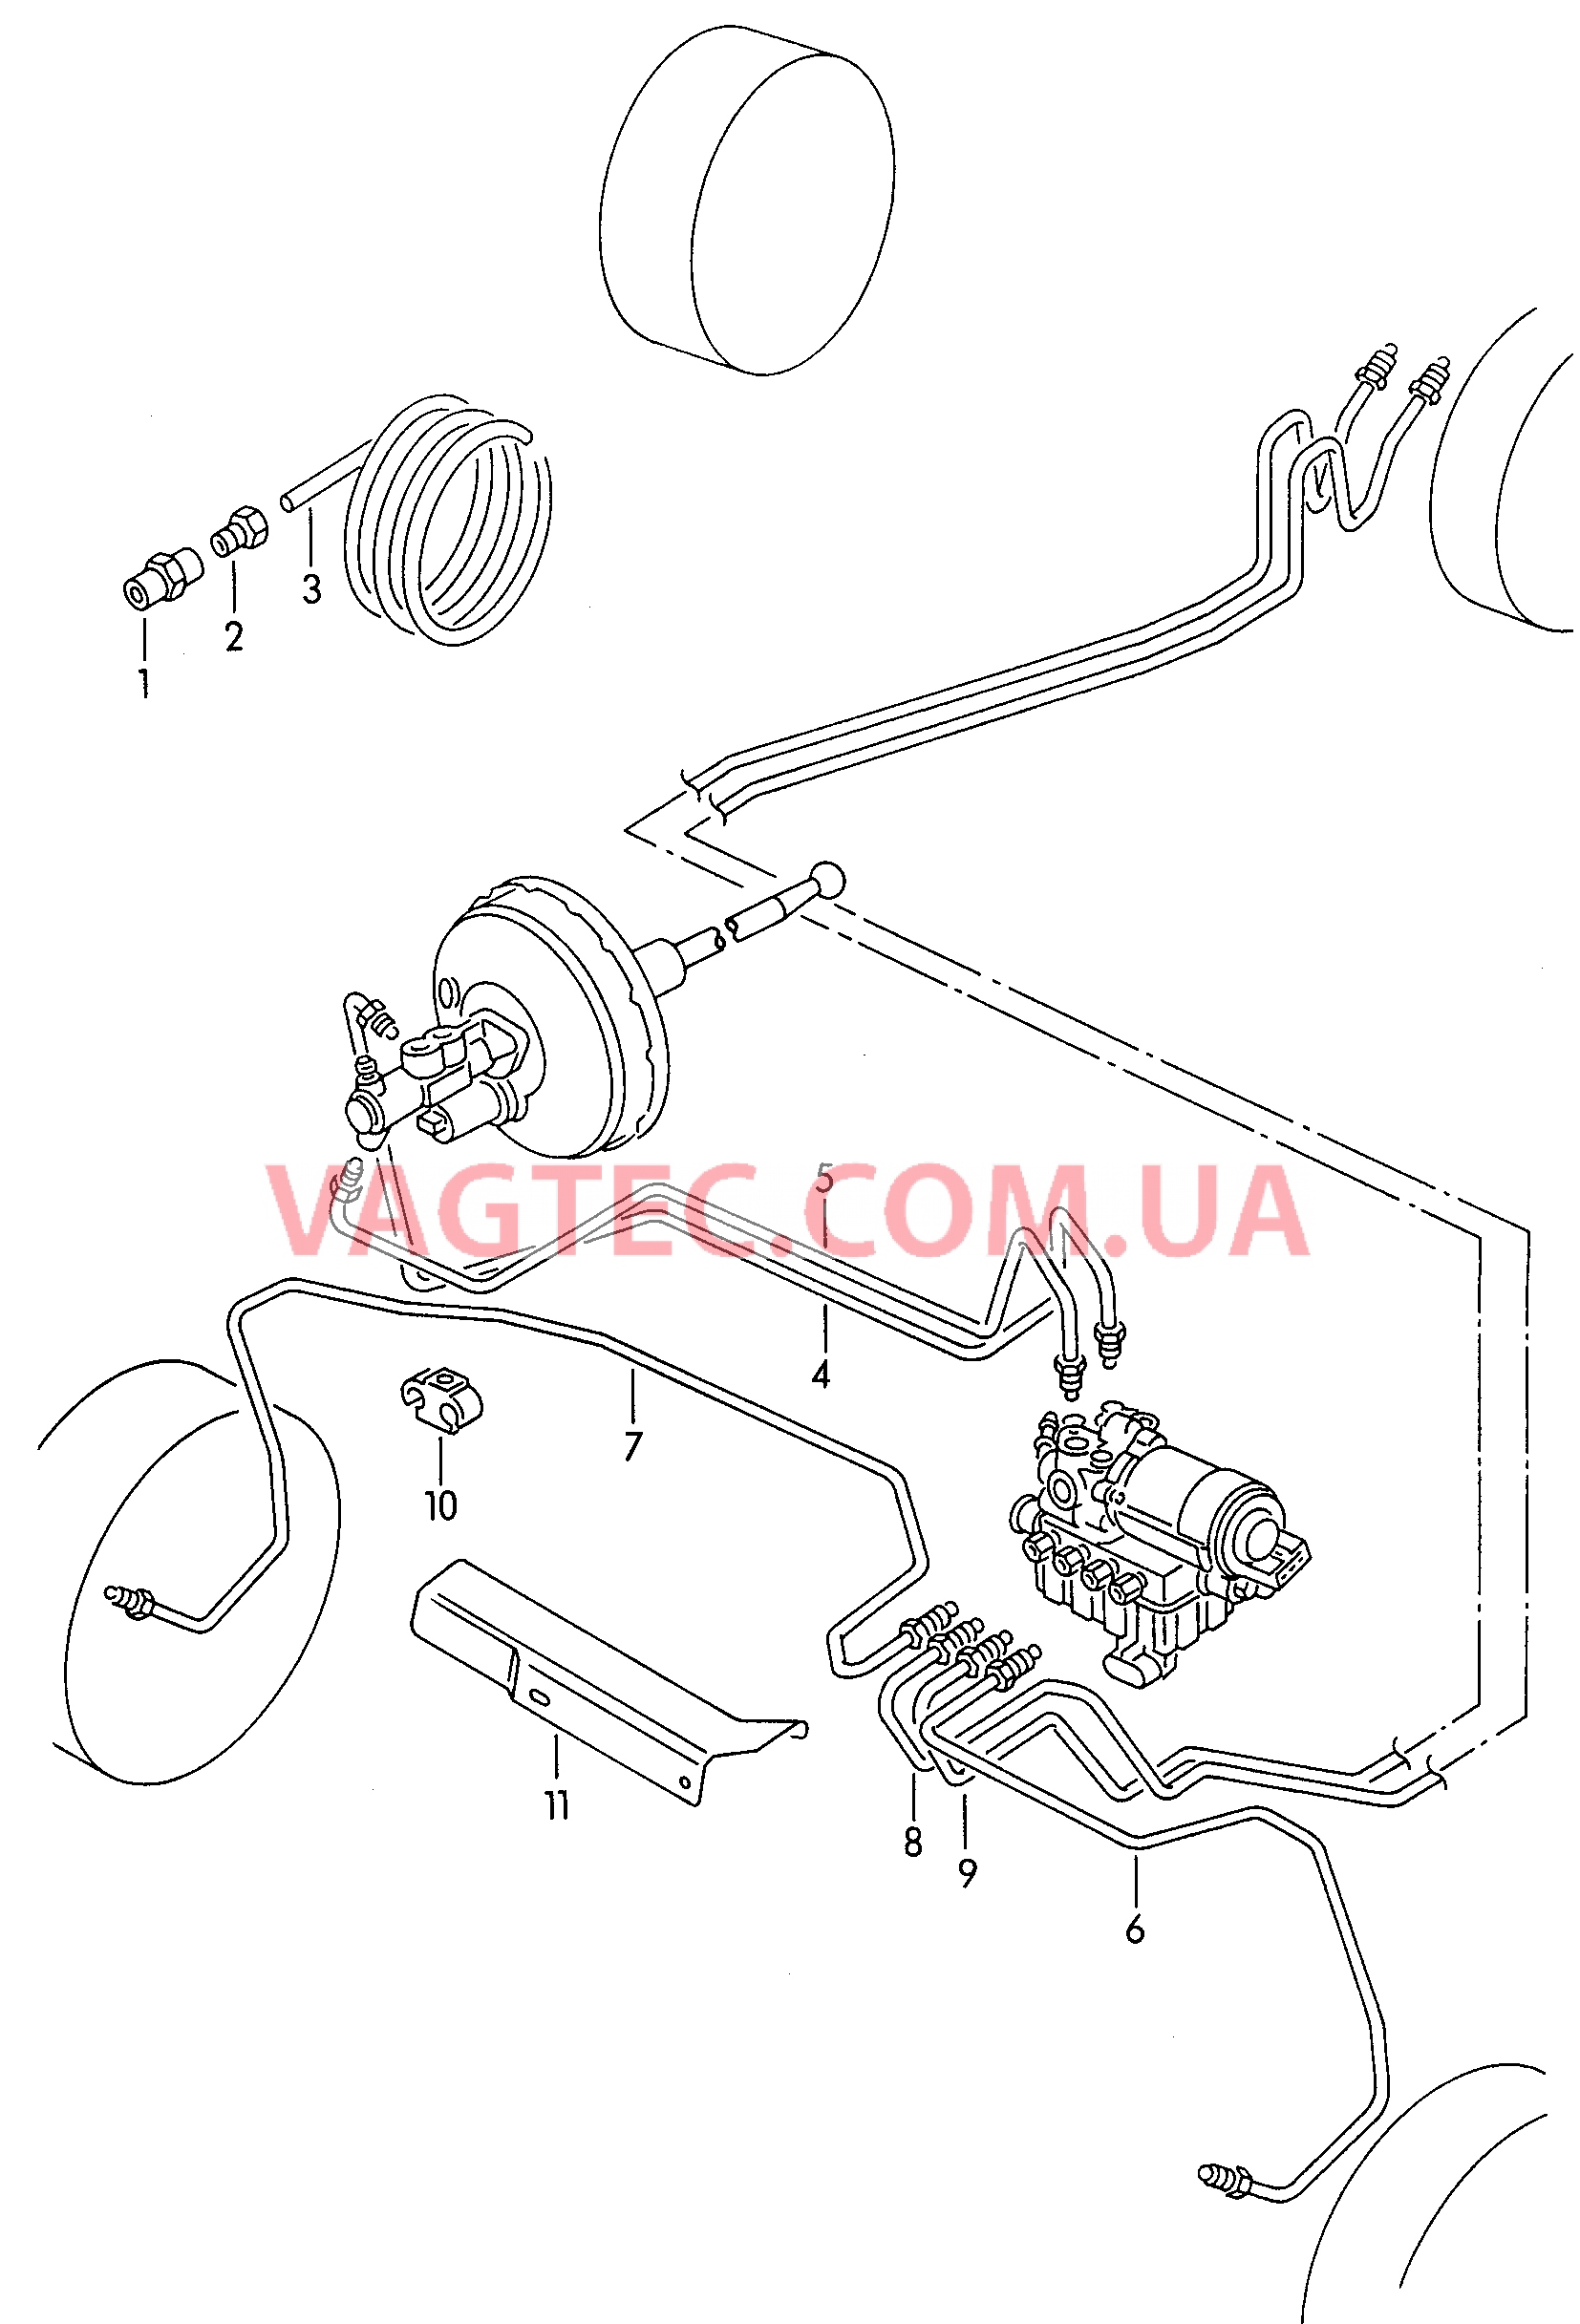 Тормозная трубка для а/м с антиблокировочной системой тормозов        -ABS-  для SEAT Ibiza 2000